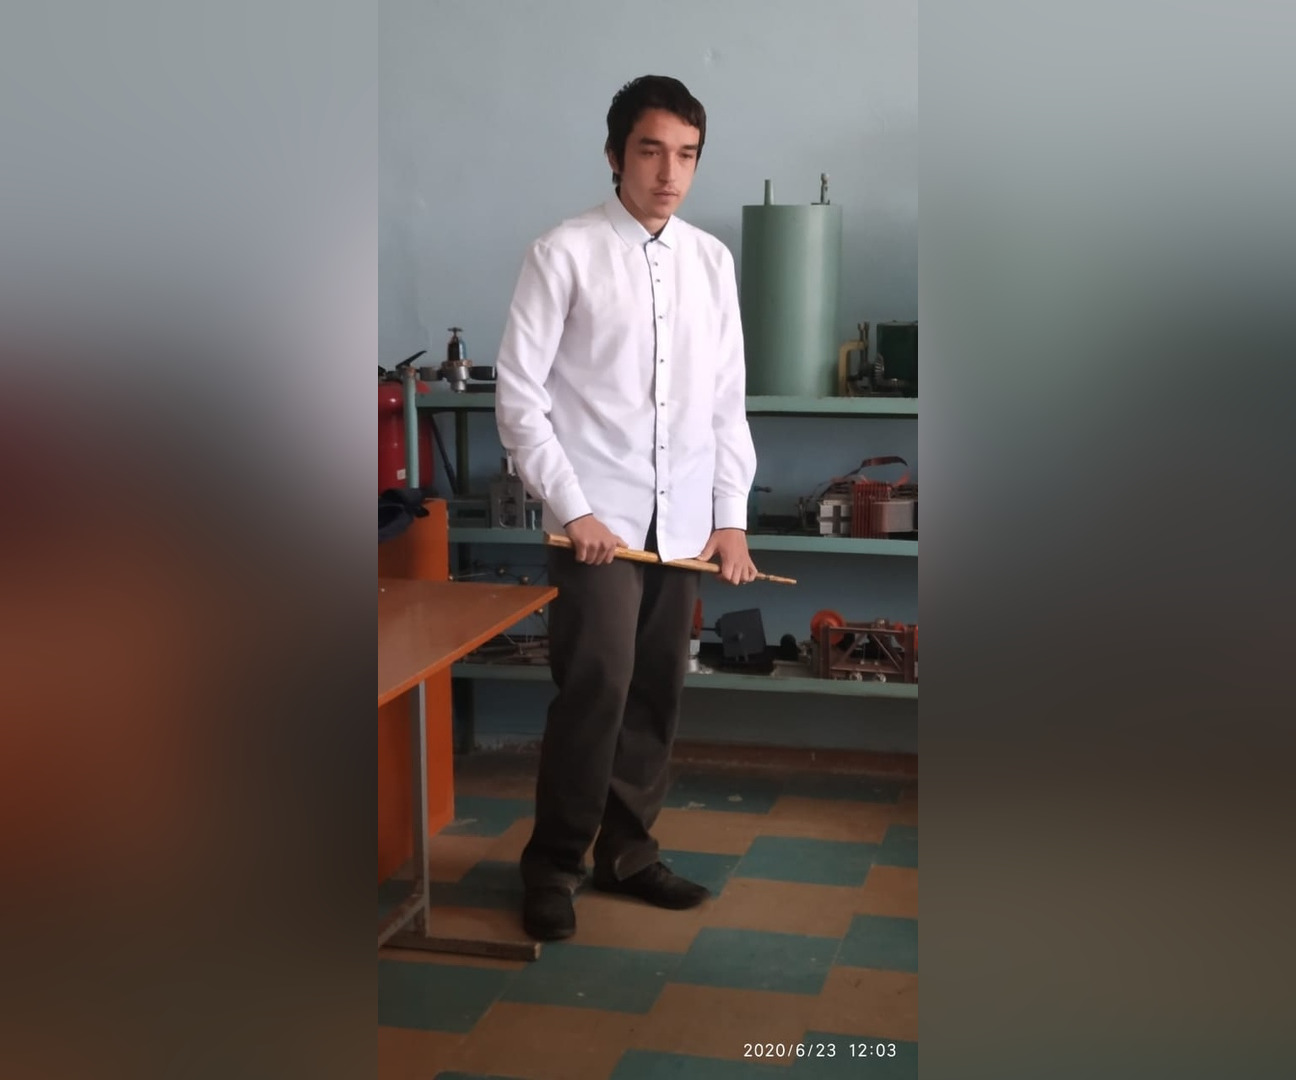 Ушёл искать работу и не вернулся: В Башкирии пропал 18-летний Артур Галиуллин